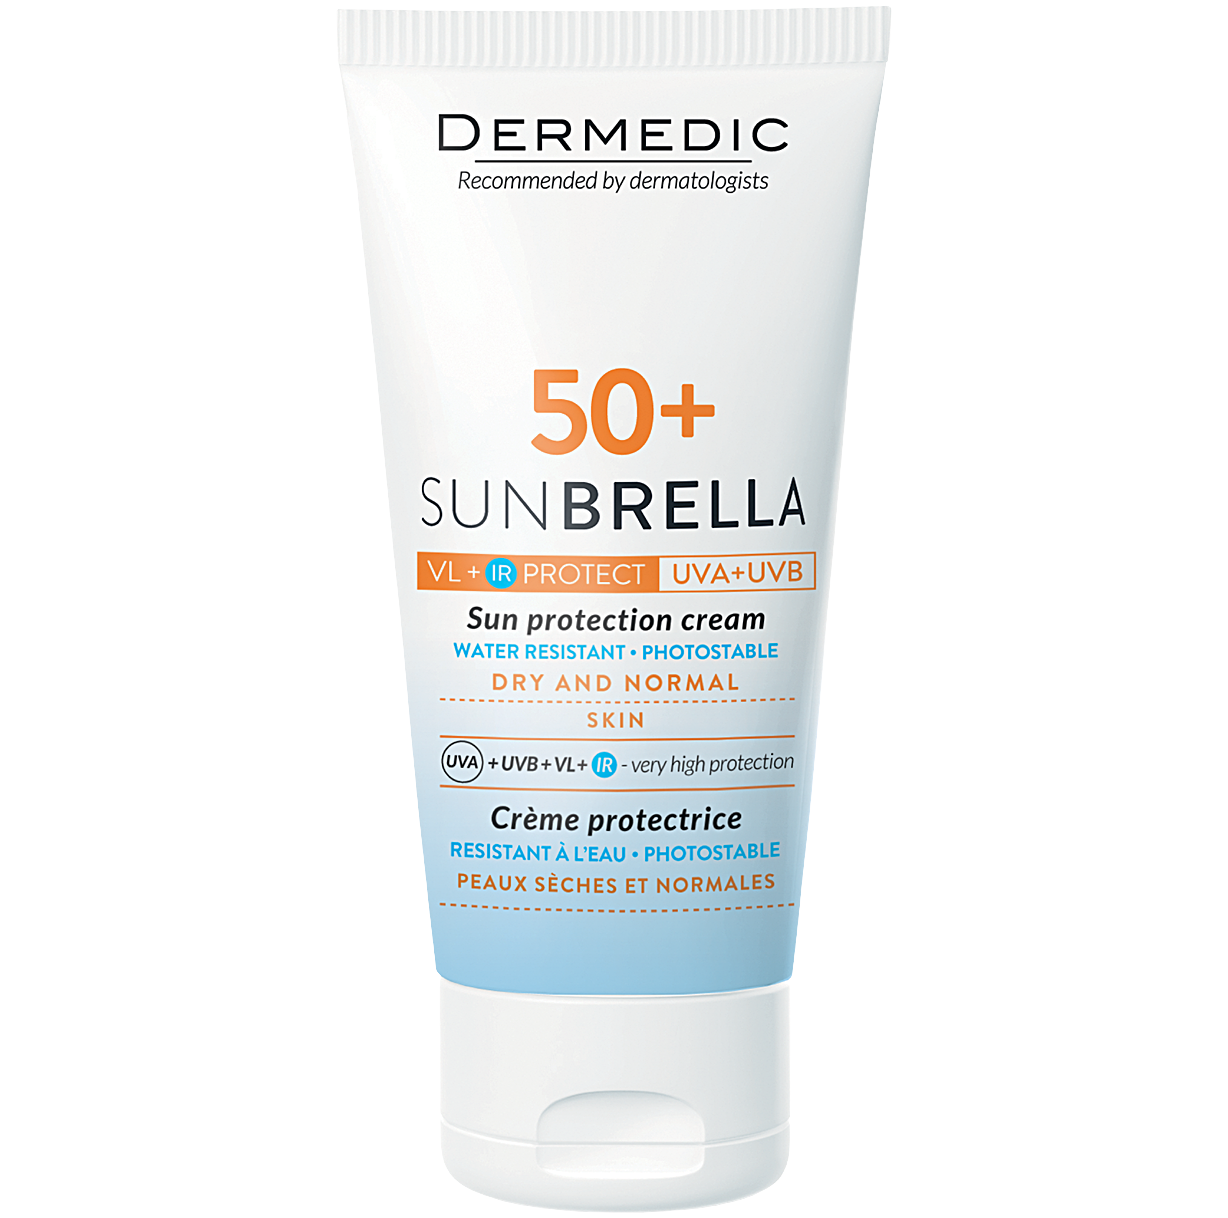 Dermedic Sunbrella водостойкий защитный крем SPF50+ для сухой и нормальной кожи, 50 мл крем солнцезащитный для сухой и нормальной кожи spf50 sunbrella dermedic дермедик 50мл